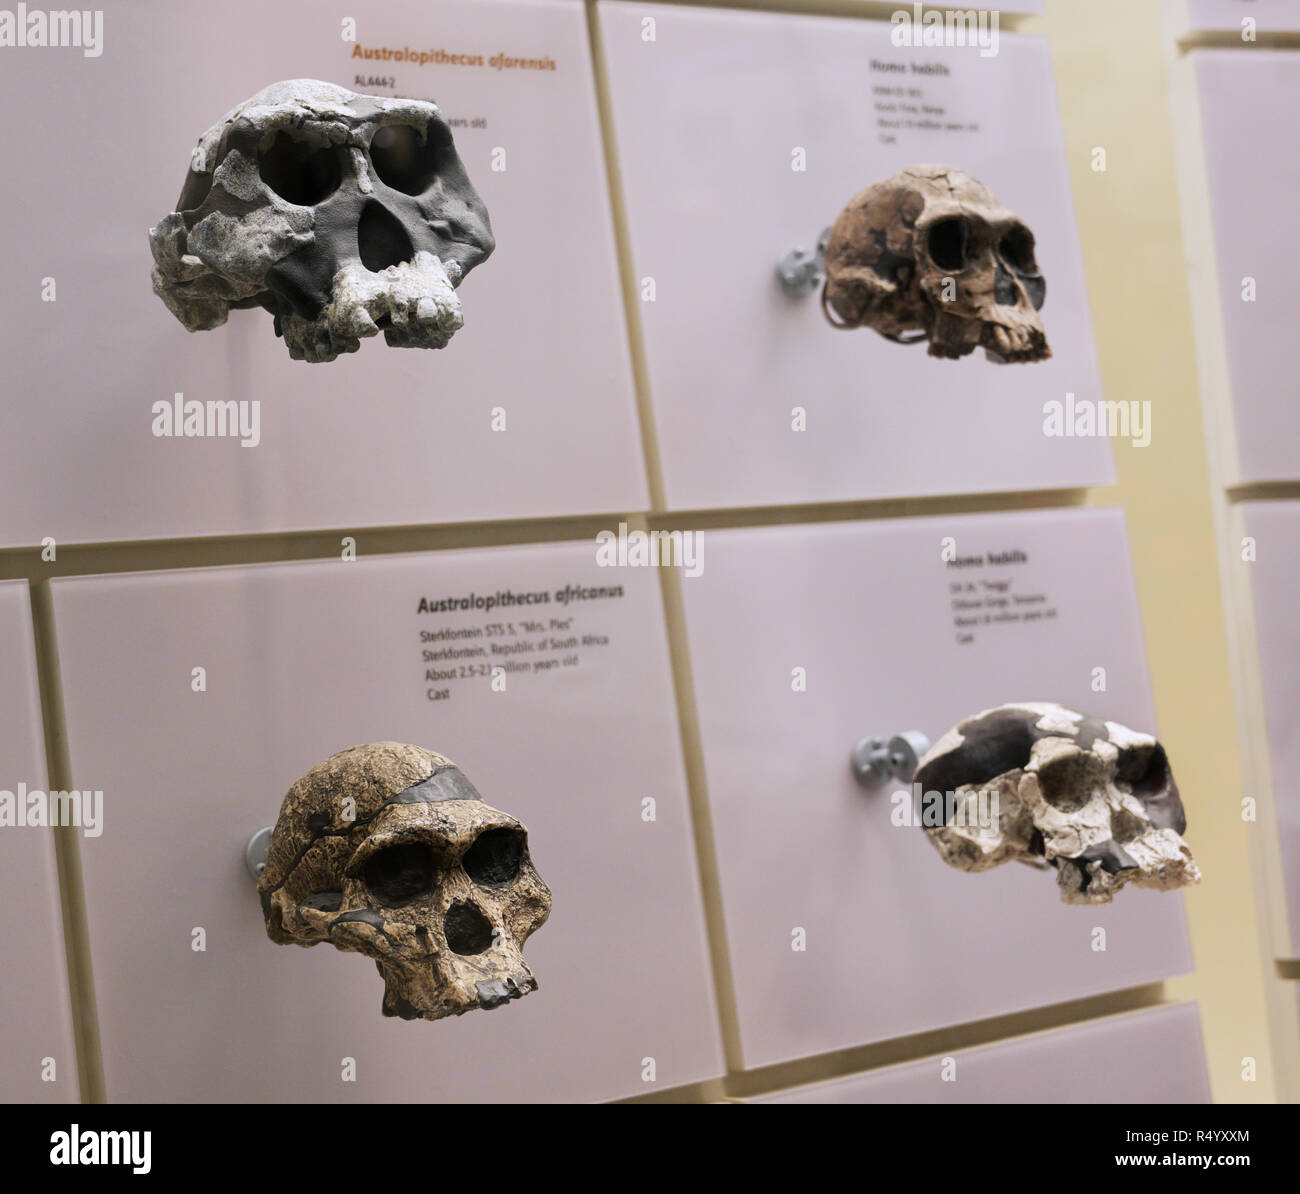 Cráneos de homínidos Hominin cráneos incluidas dos especies de Australopithecus y uno del género Homo Foto de stock